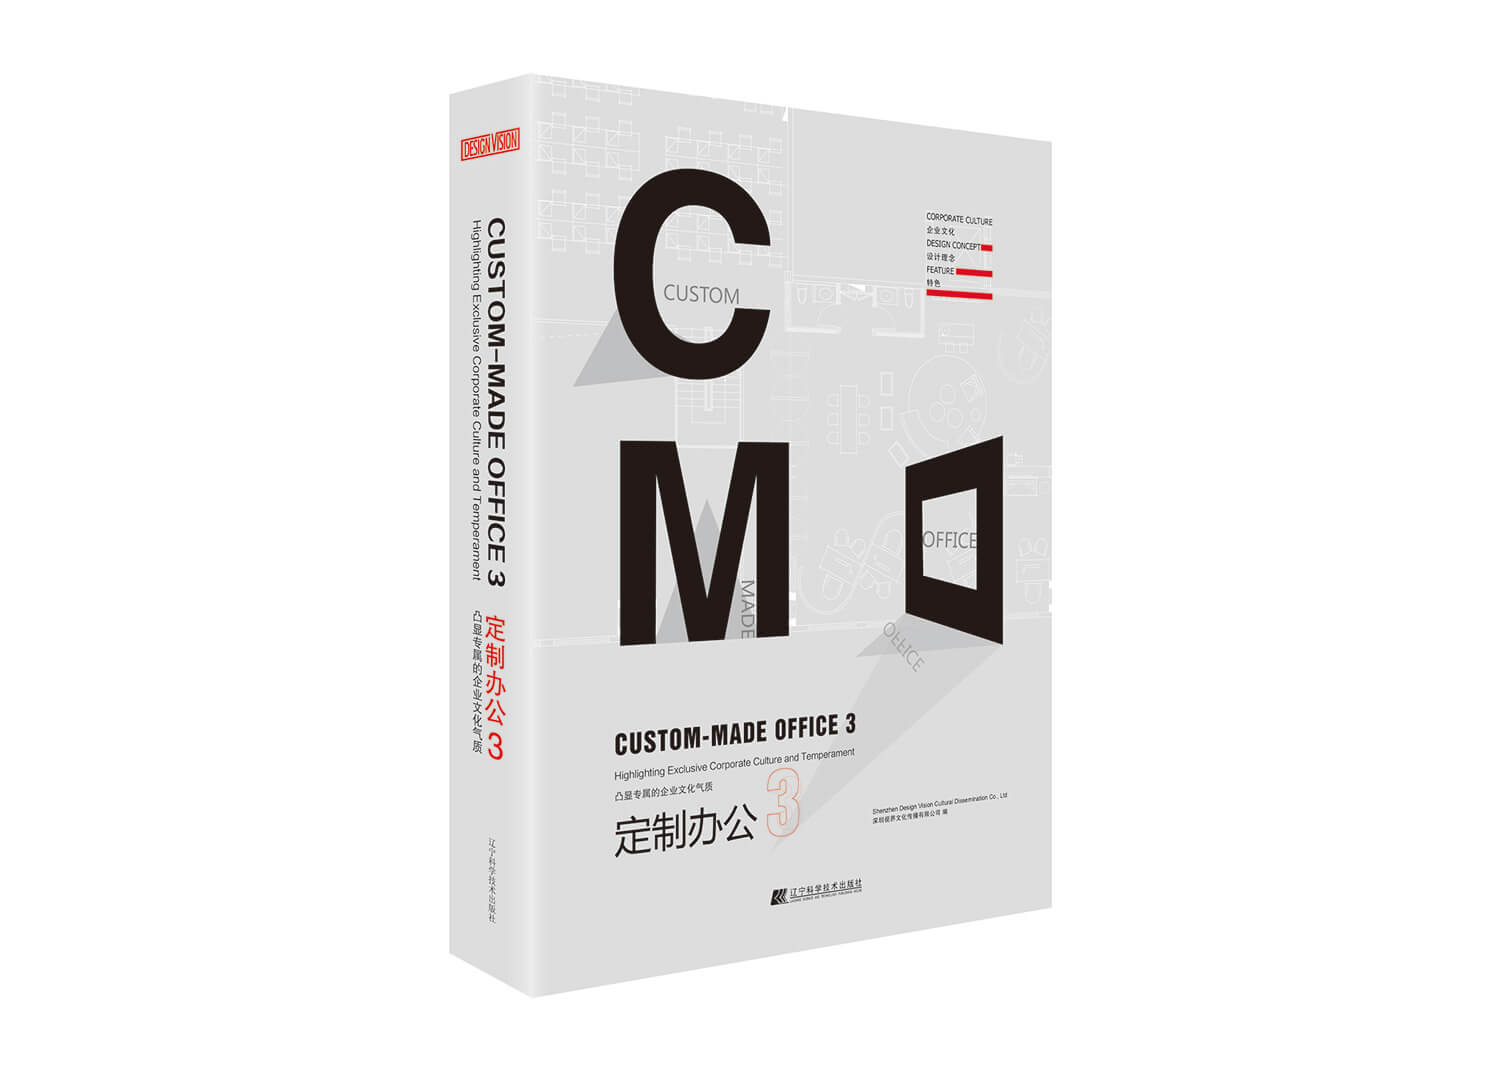 CustomMadeOffice3-OSO-01